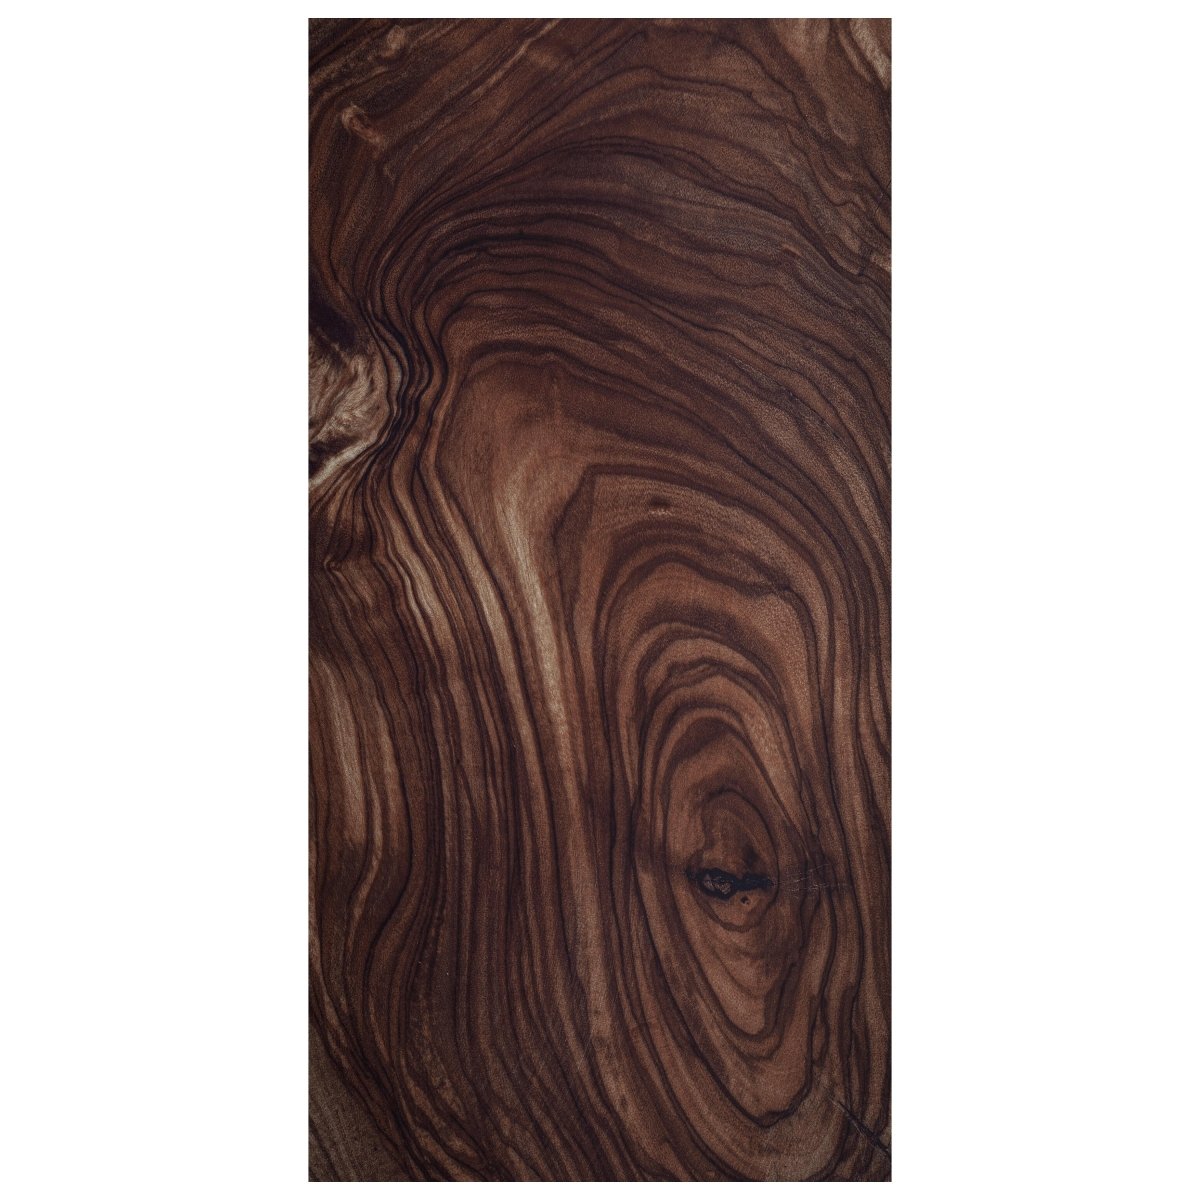 Türtapete Nussbaum Holz, dunkles Holz, Braun M1217 - Bild 2